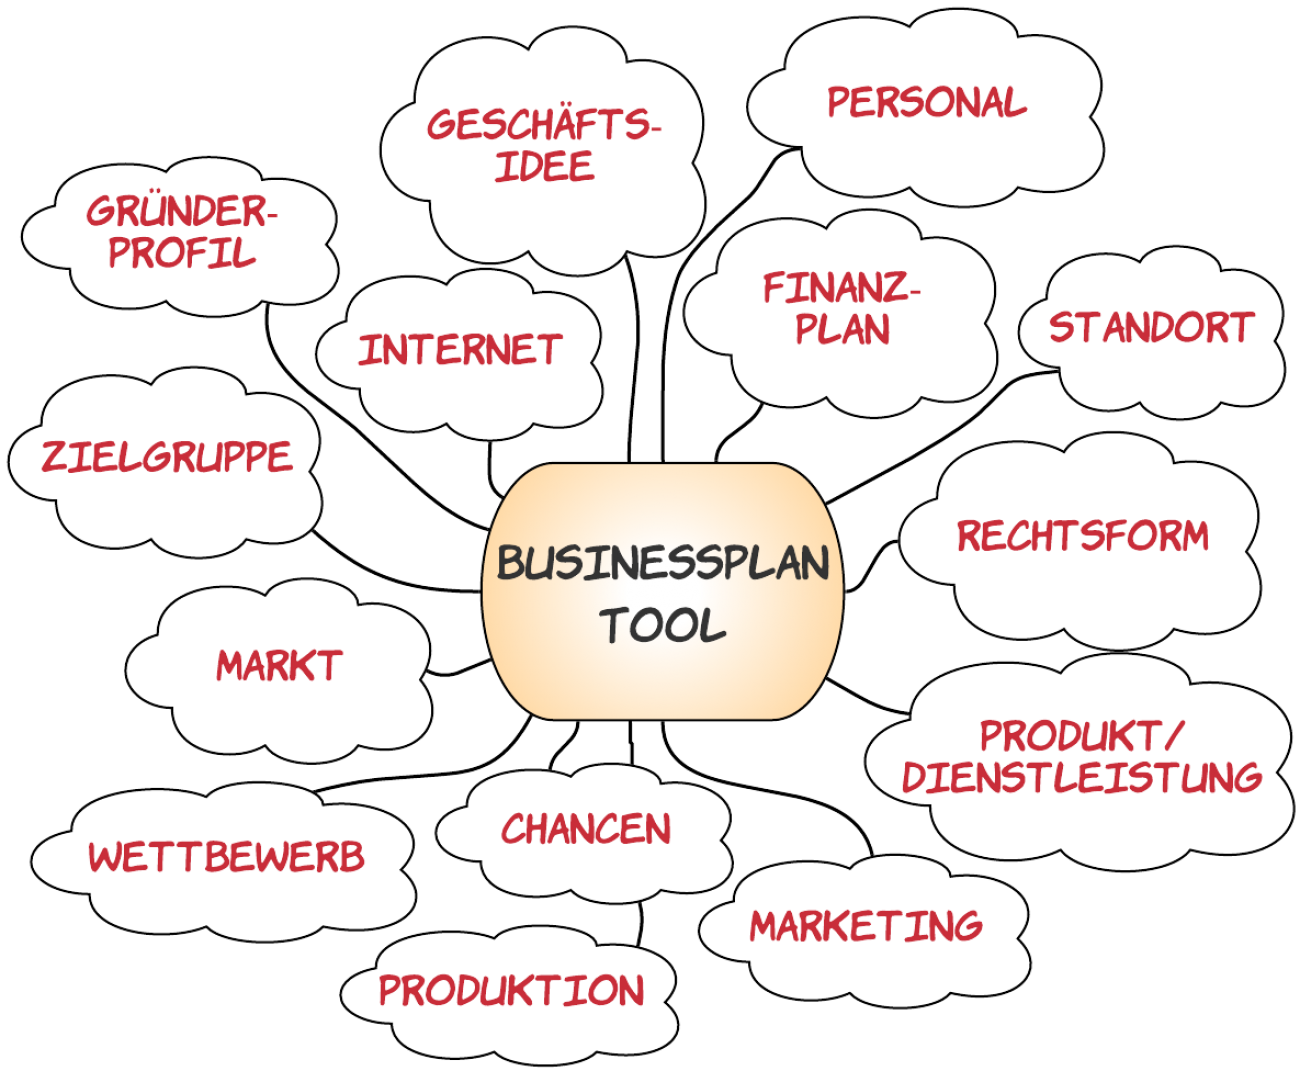 Businessplan-Tool mit Inhalten